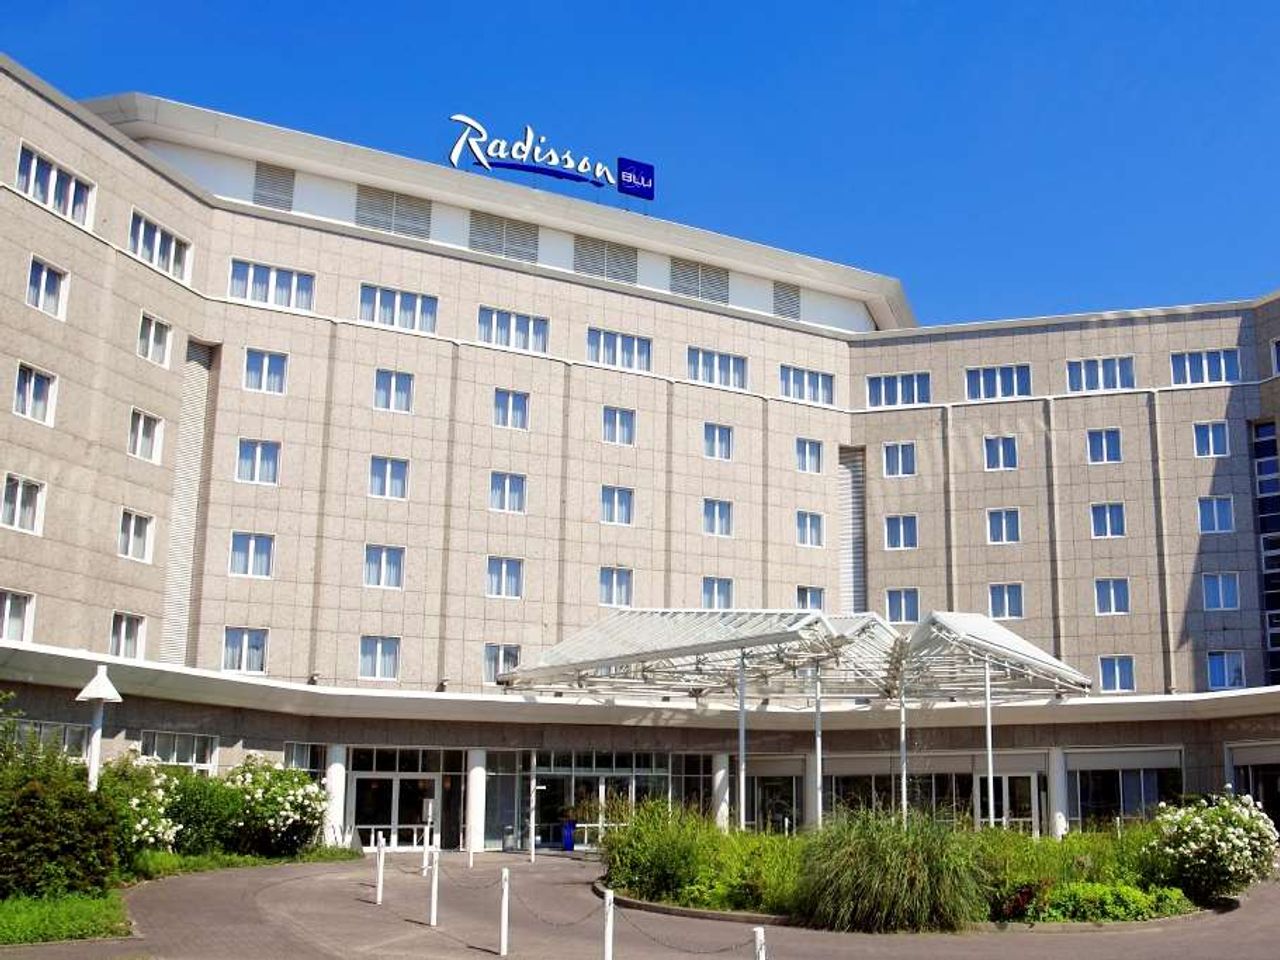 2 Tage im Radisson Blu Hotel, Dortmund 